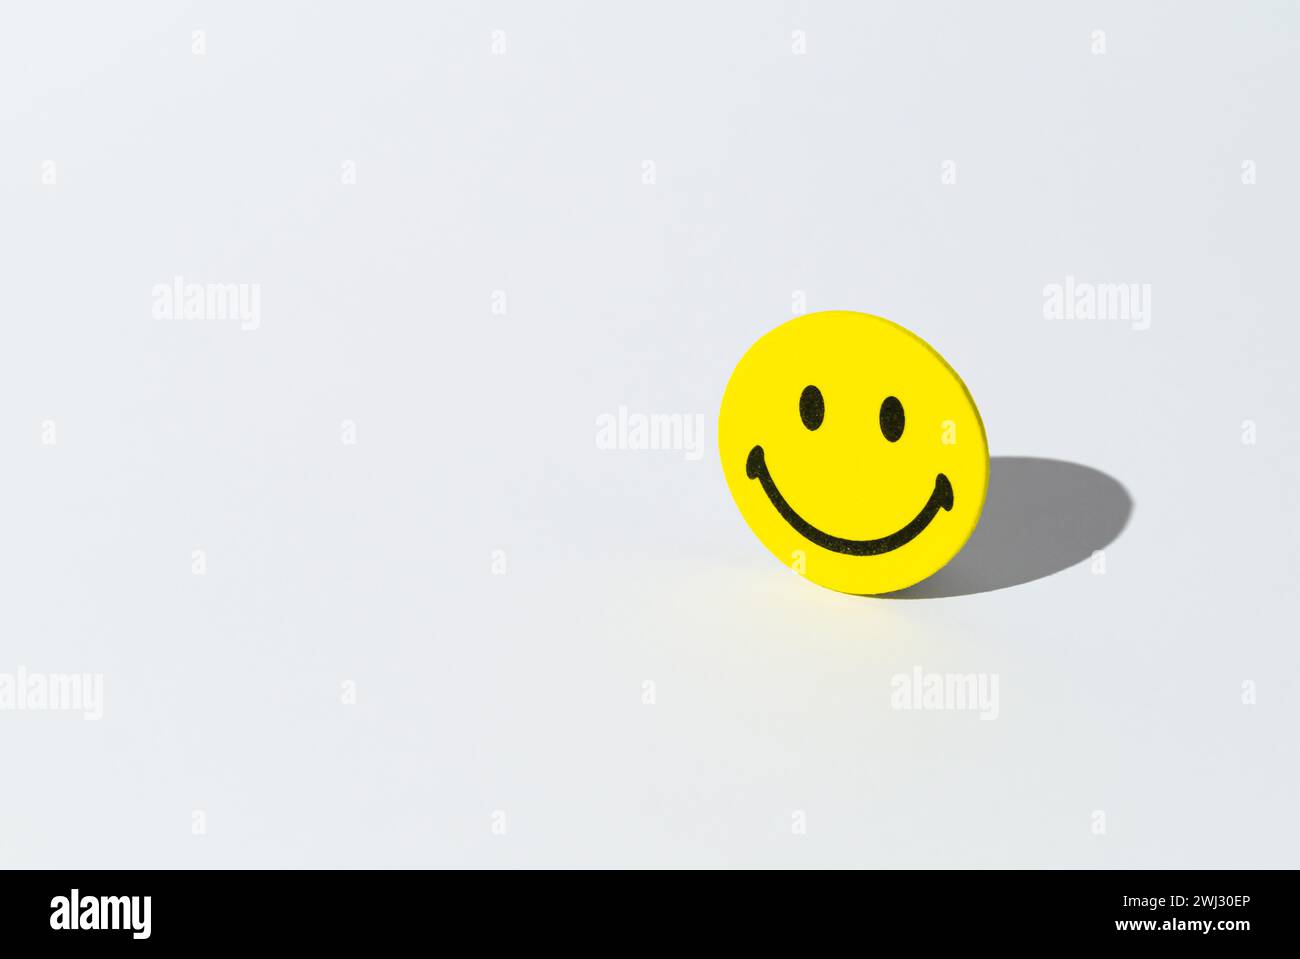 Kreatives Layout mit Smiley-Aufklebern auf weißem Hintergrund. Minimales positives Denken und gute Stimmung. Die Idee zur Erholung der psychischen Versorgung. Stockfoto